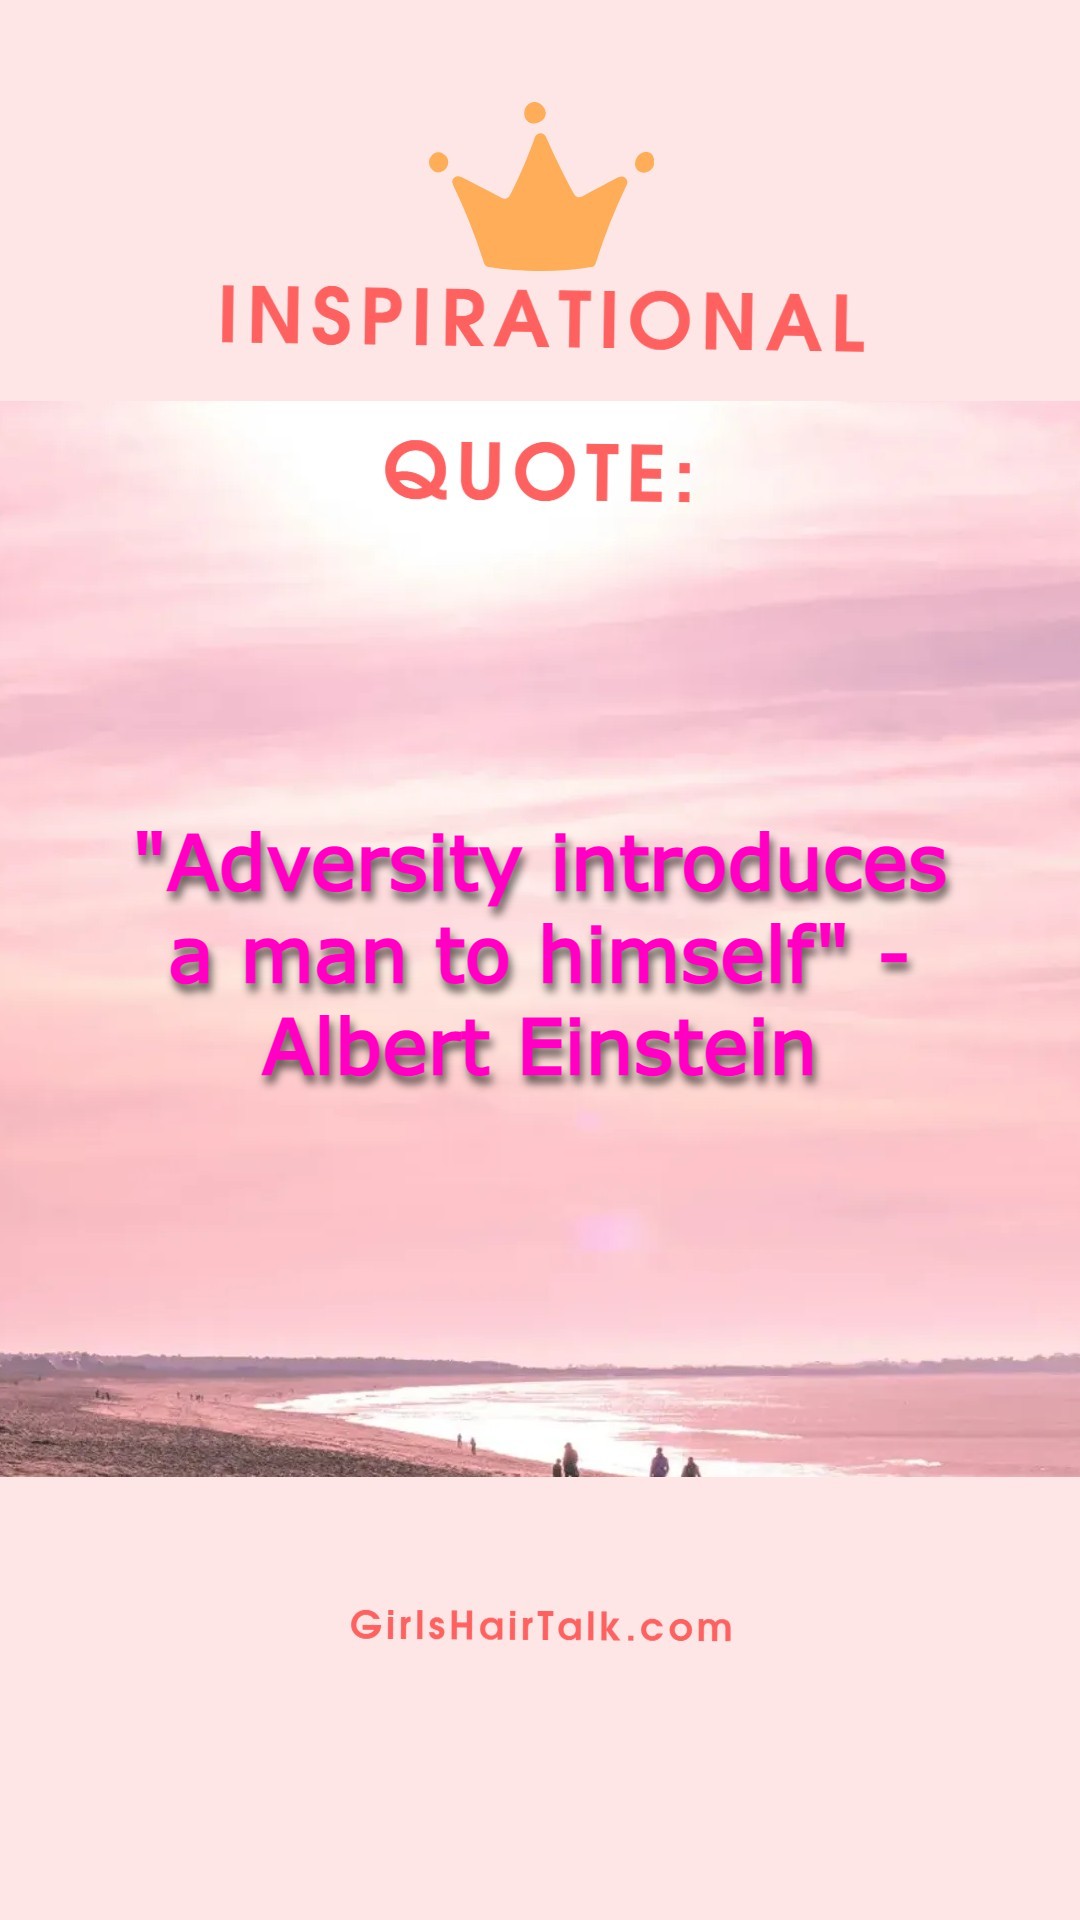 Albert Einstein cancer quote